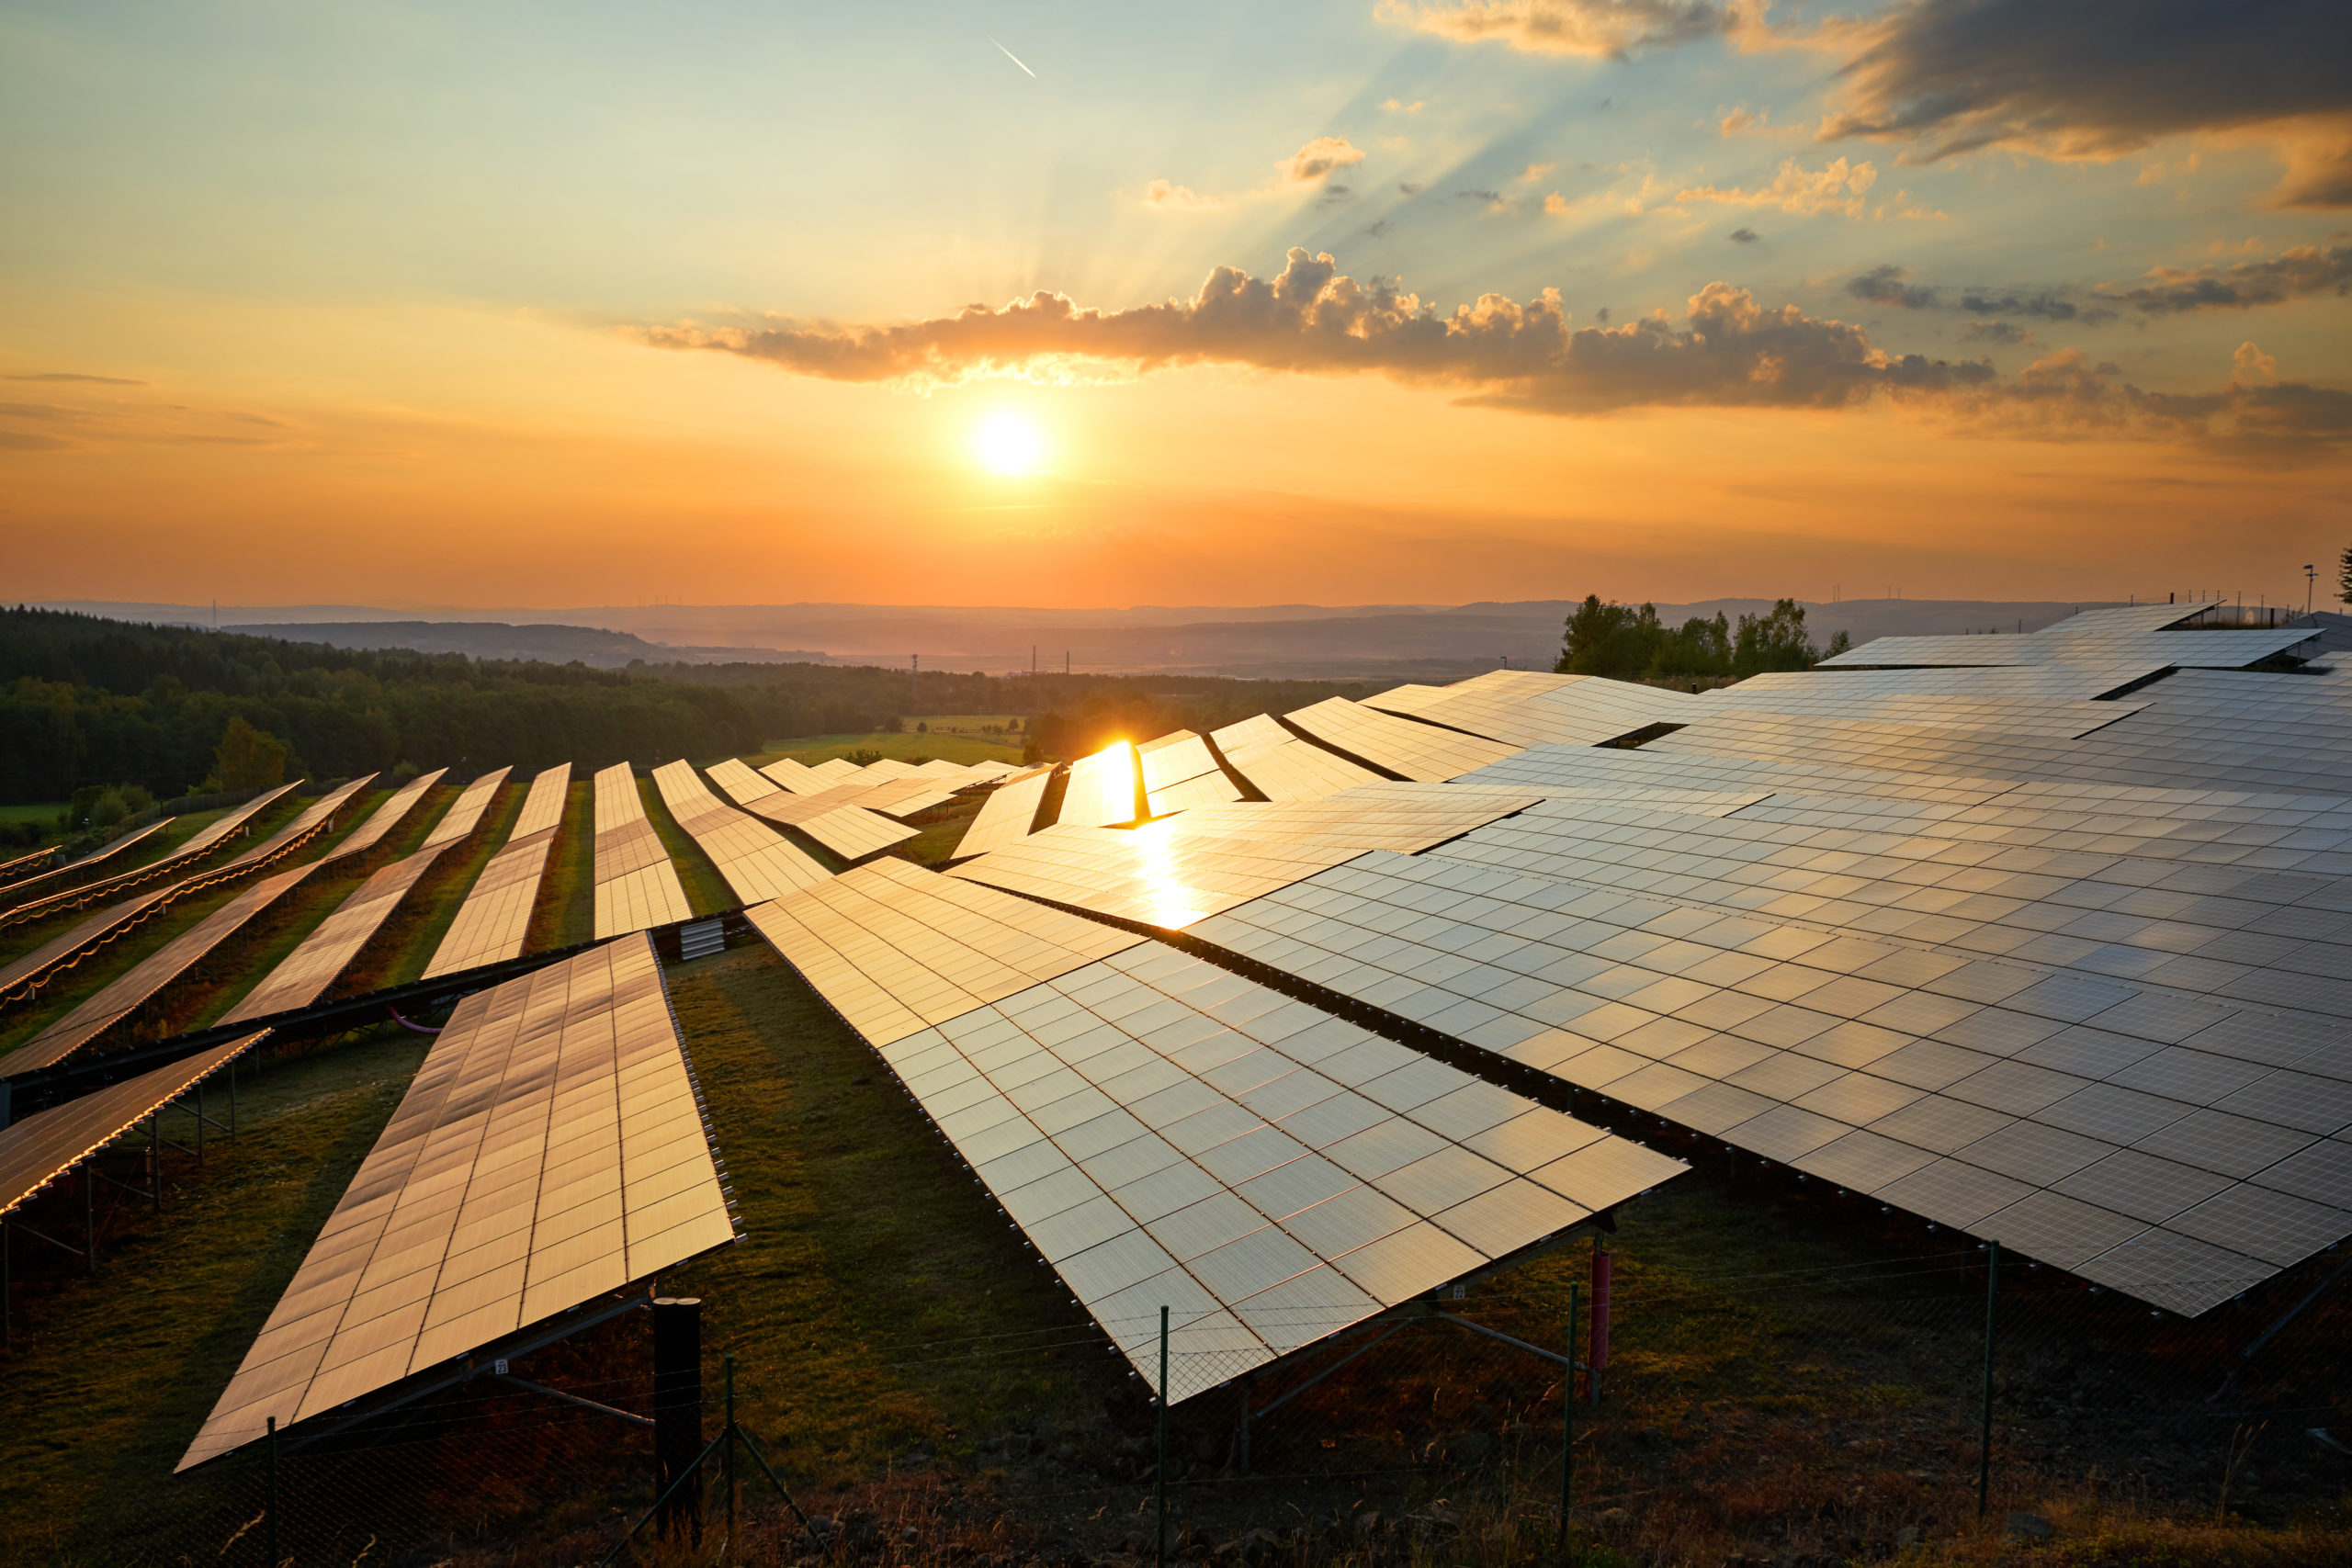 Fazenda de energia solar, responsável por gerar créditos que abastecem negócios e residências em diversas localidades. Créditos: Divulgação.